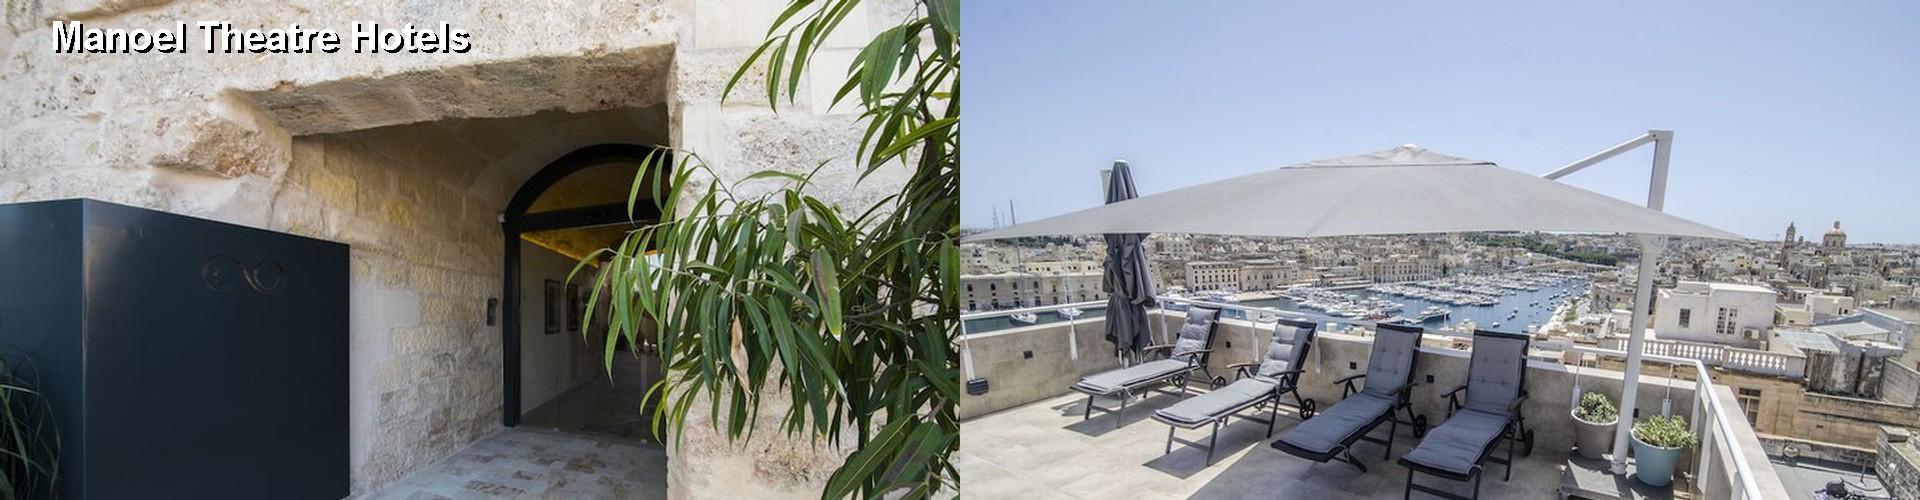 5 Best Hotels near Manoel Theatre